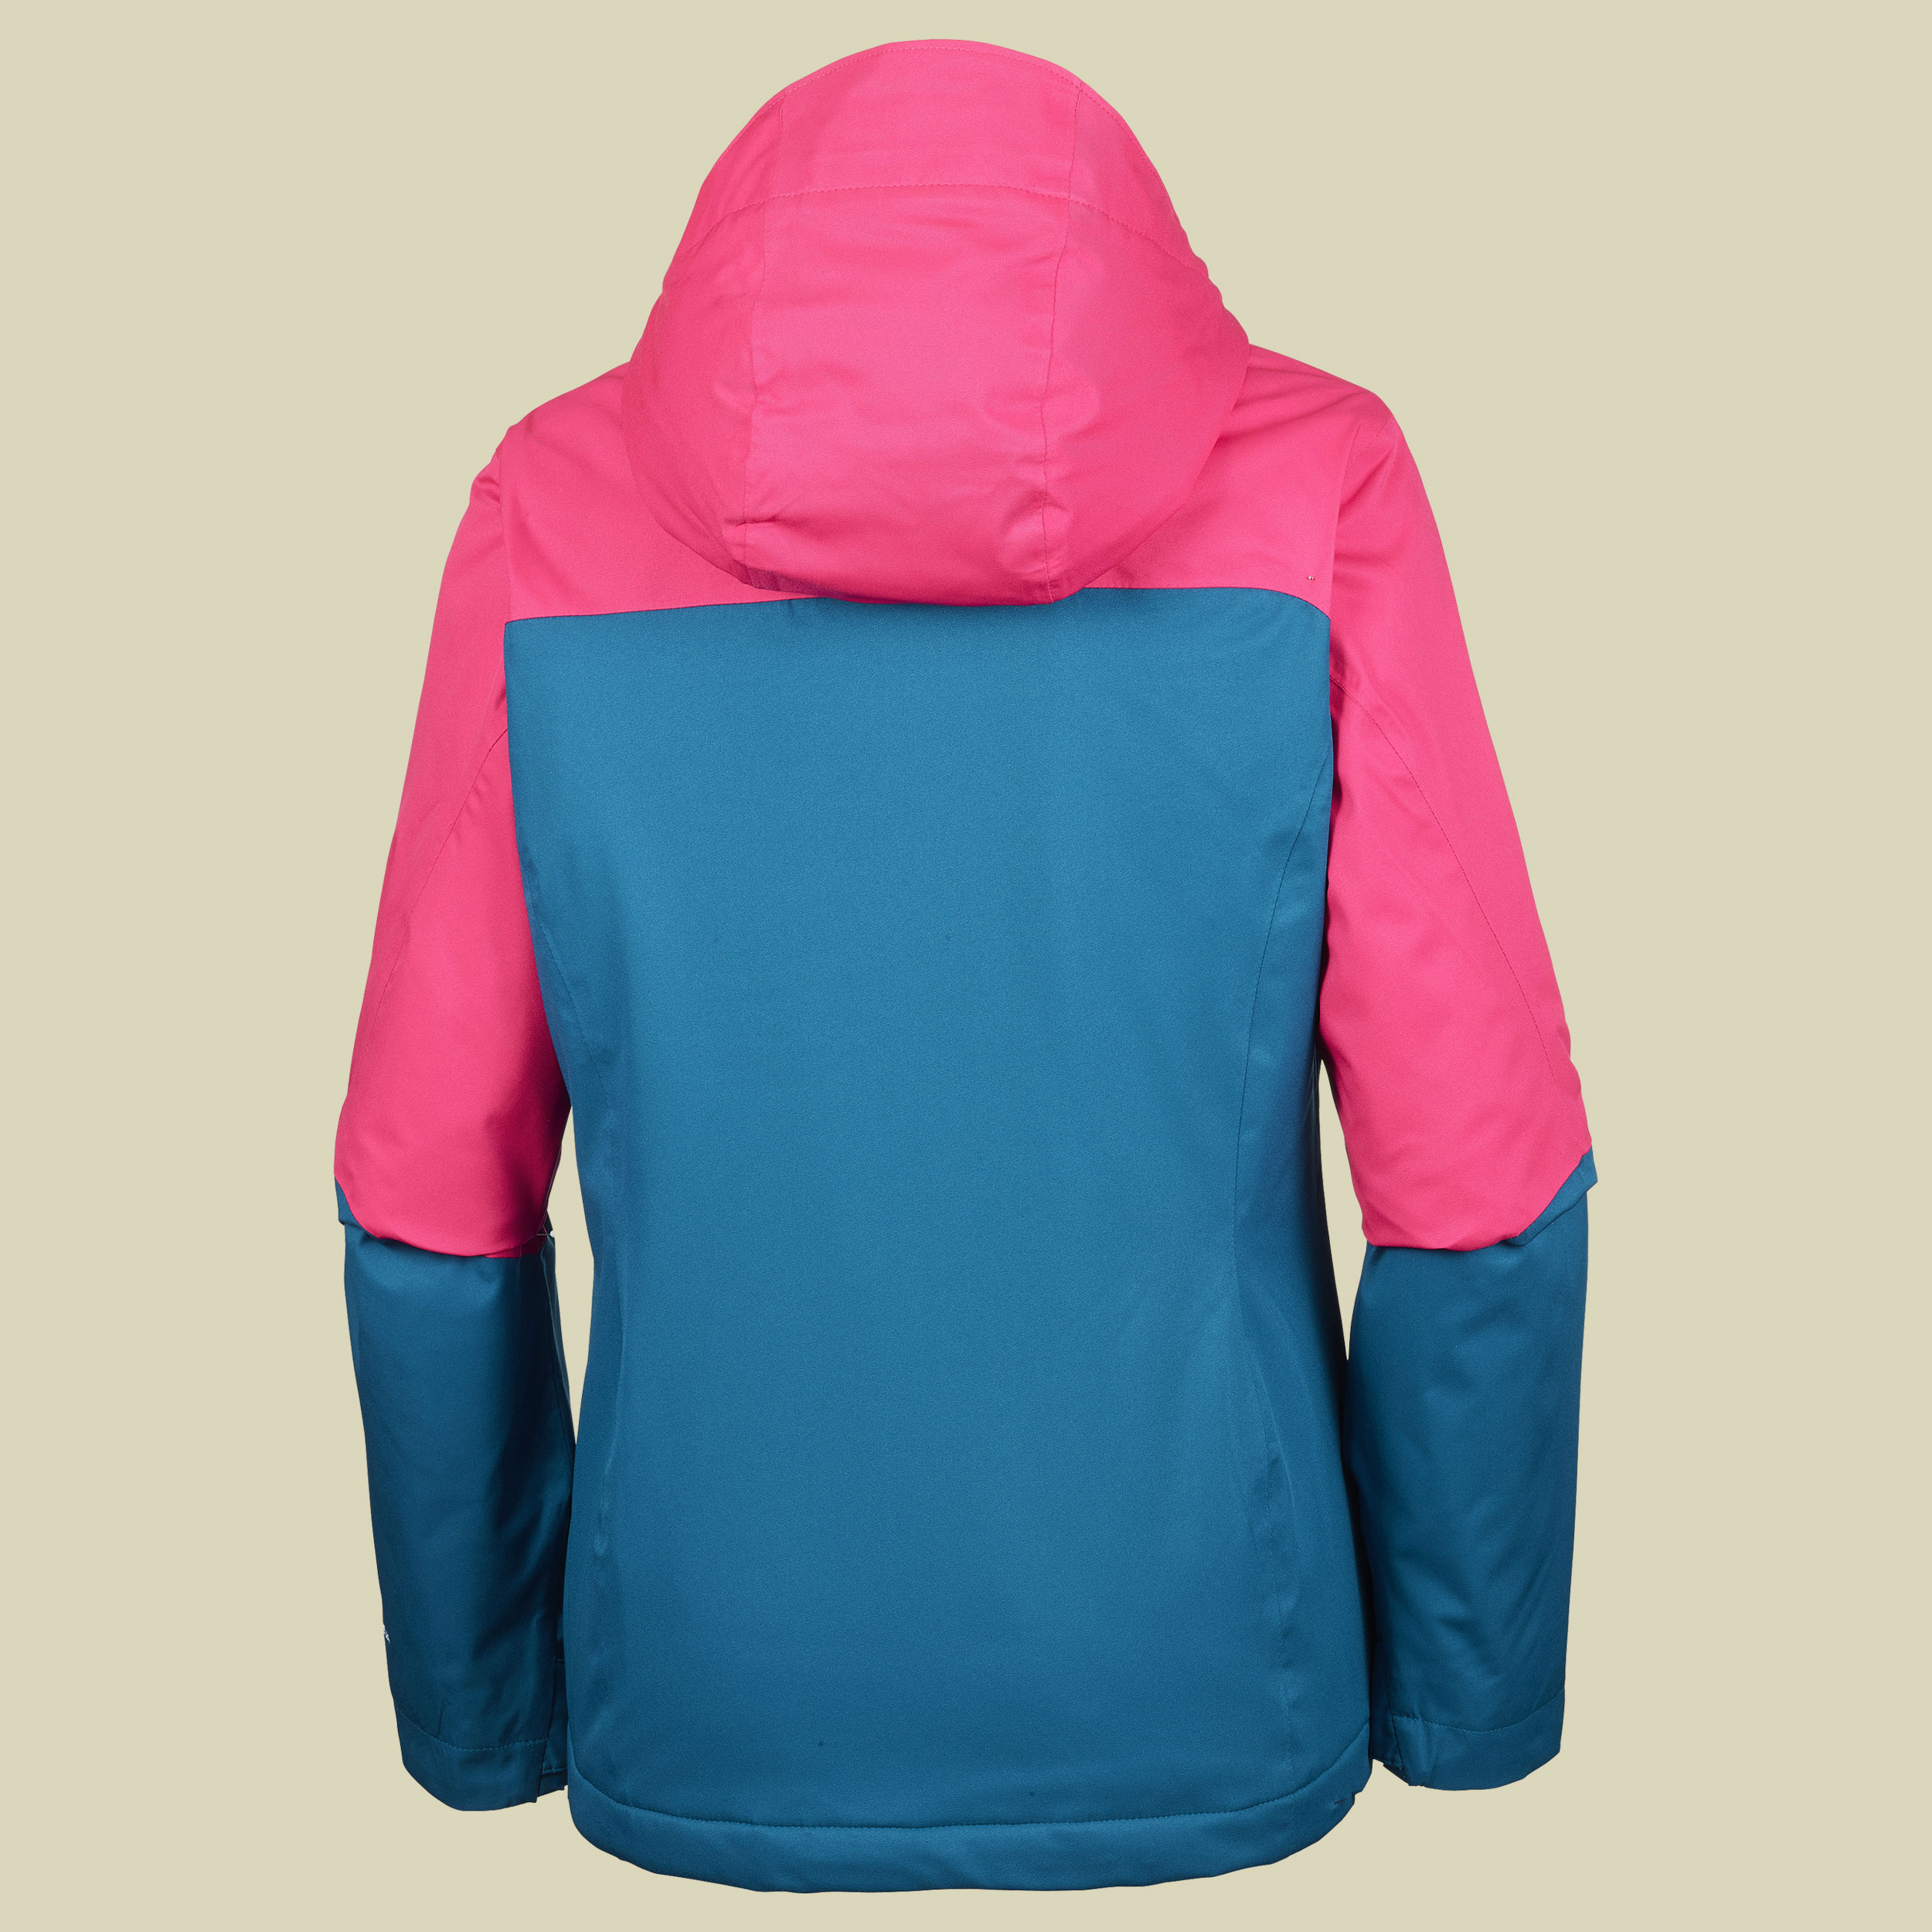 Everett Mountain Jacket Women Größe L Farbe phoenix blue, punch pink